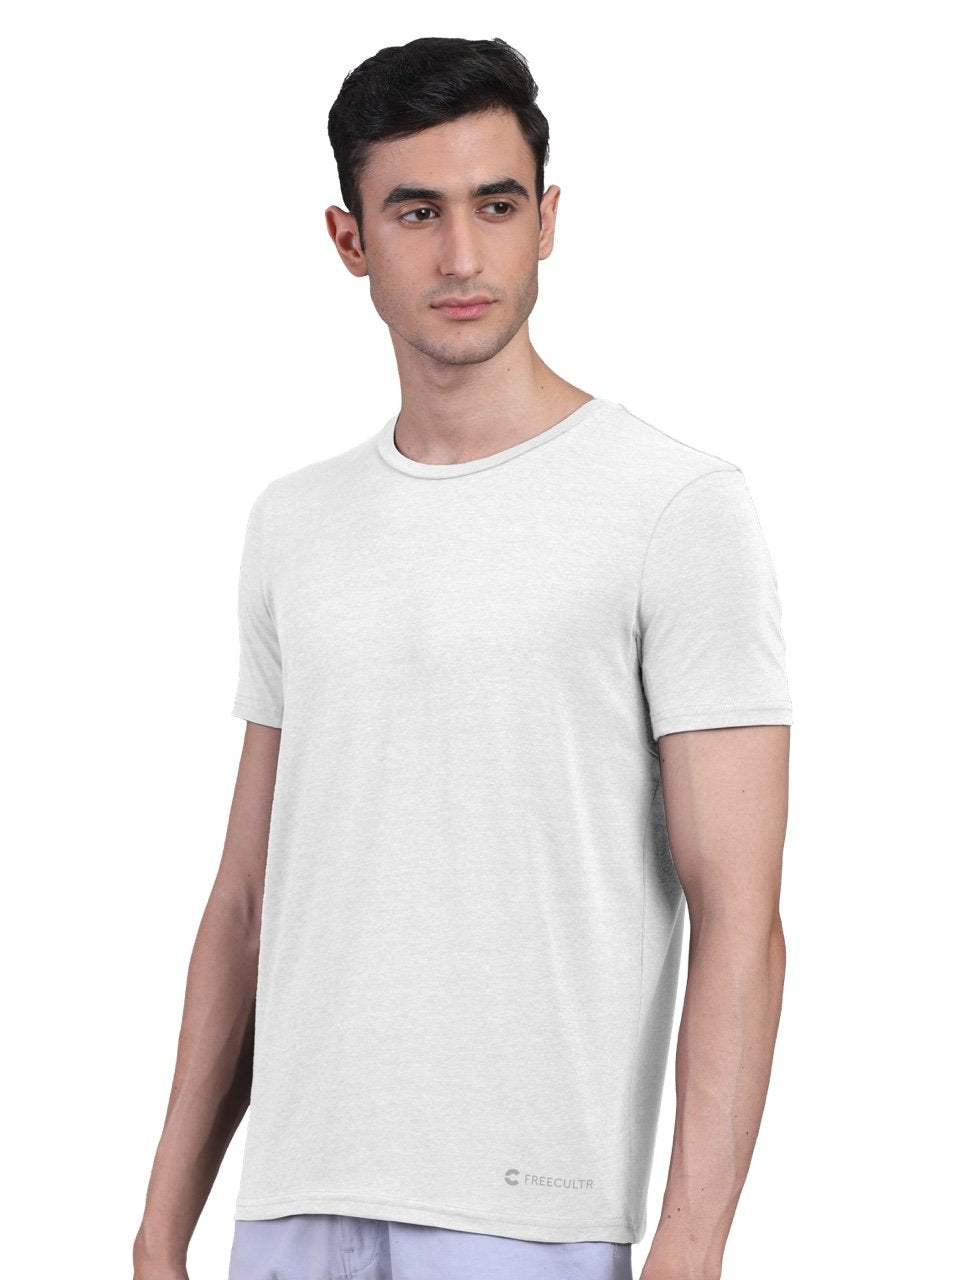 Men's Half Sleeves Bamboo Undershirts (Loungewear & Sleepwear) - Pack of 2